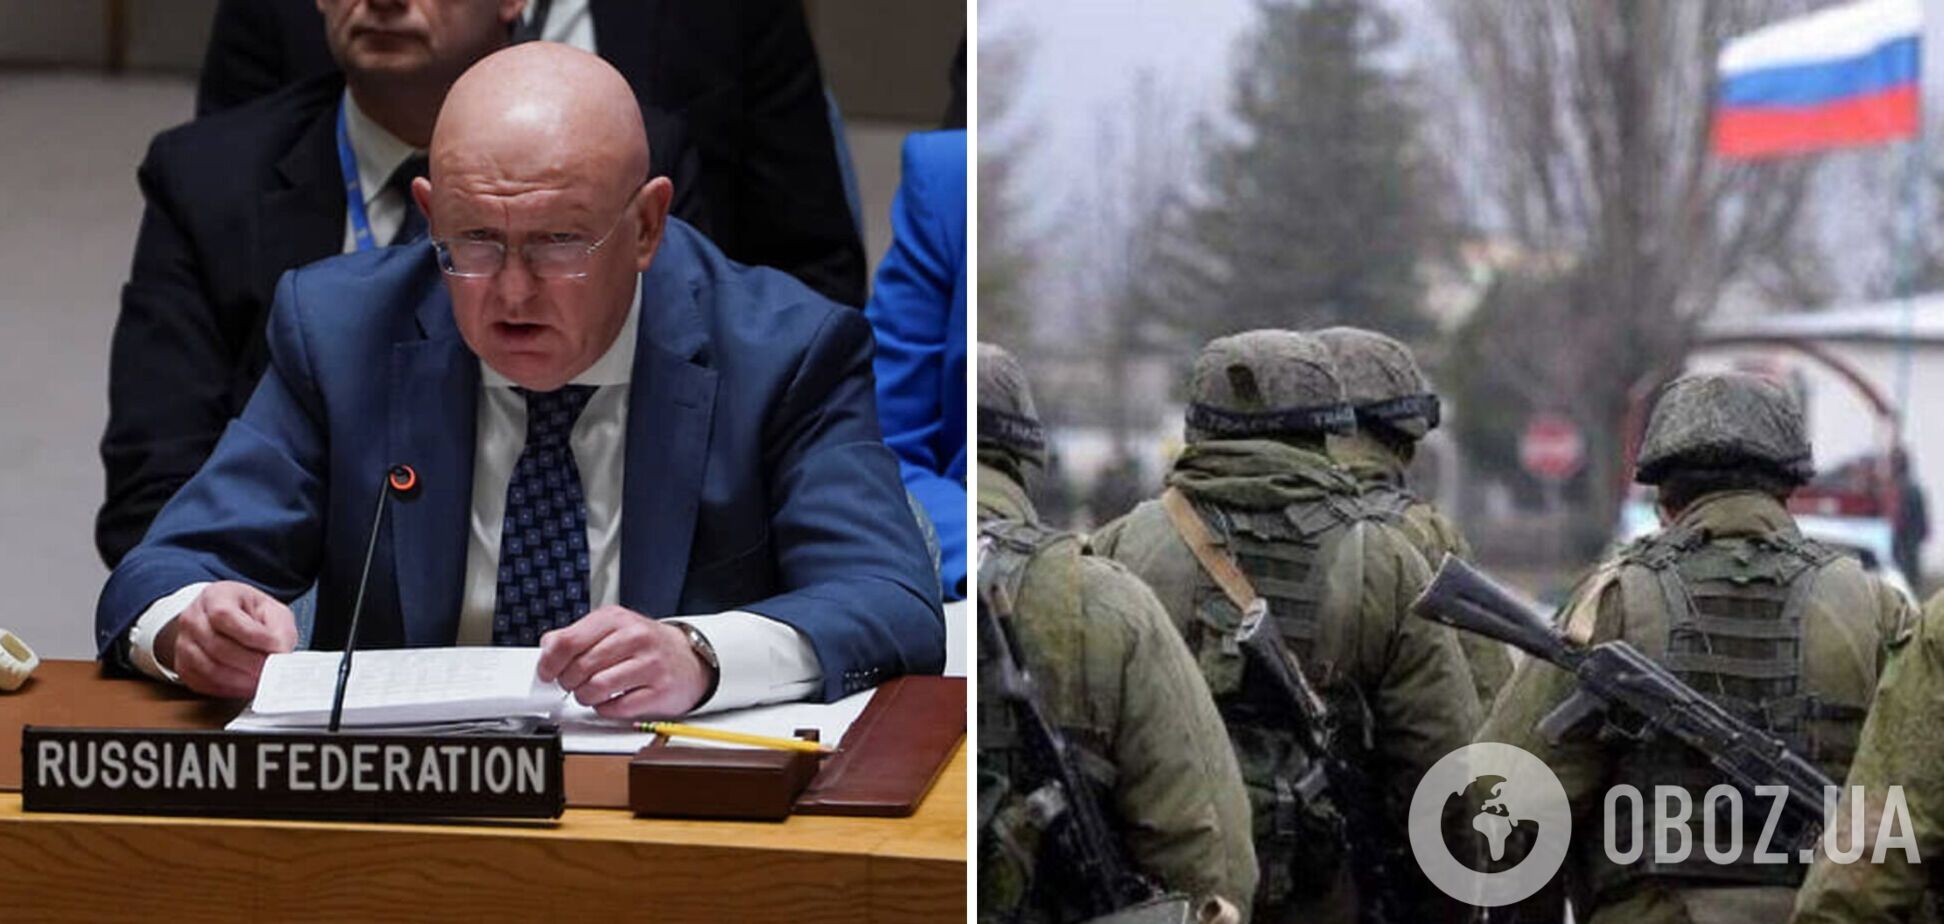 Представник Росії в ООН Небензя відкрито пригрозив повним знищенням України. Відео